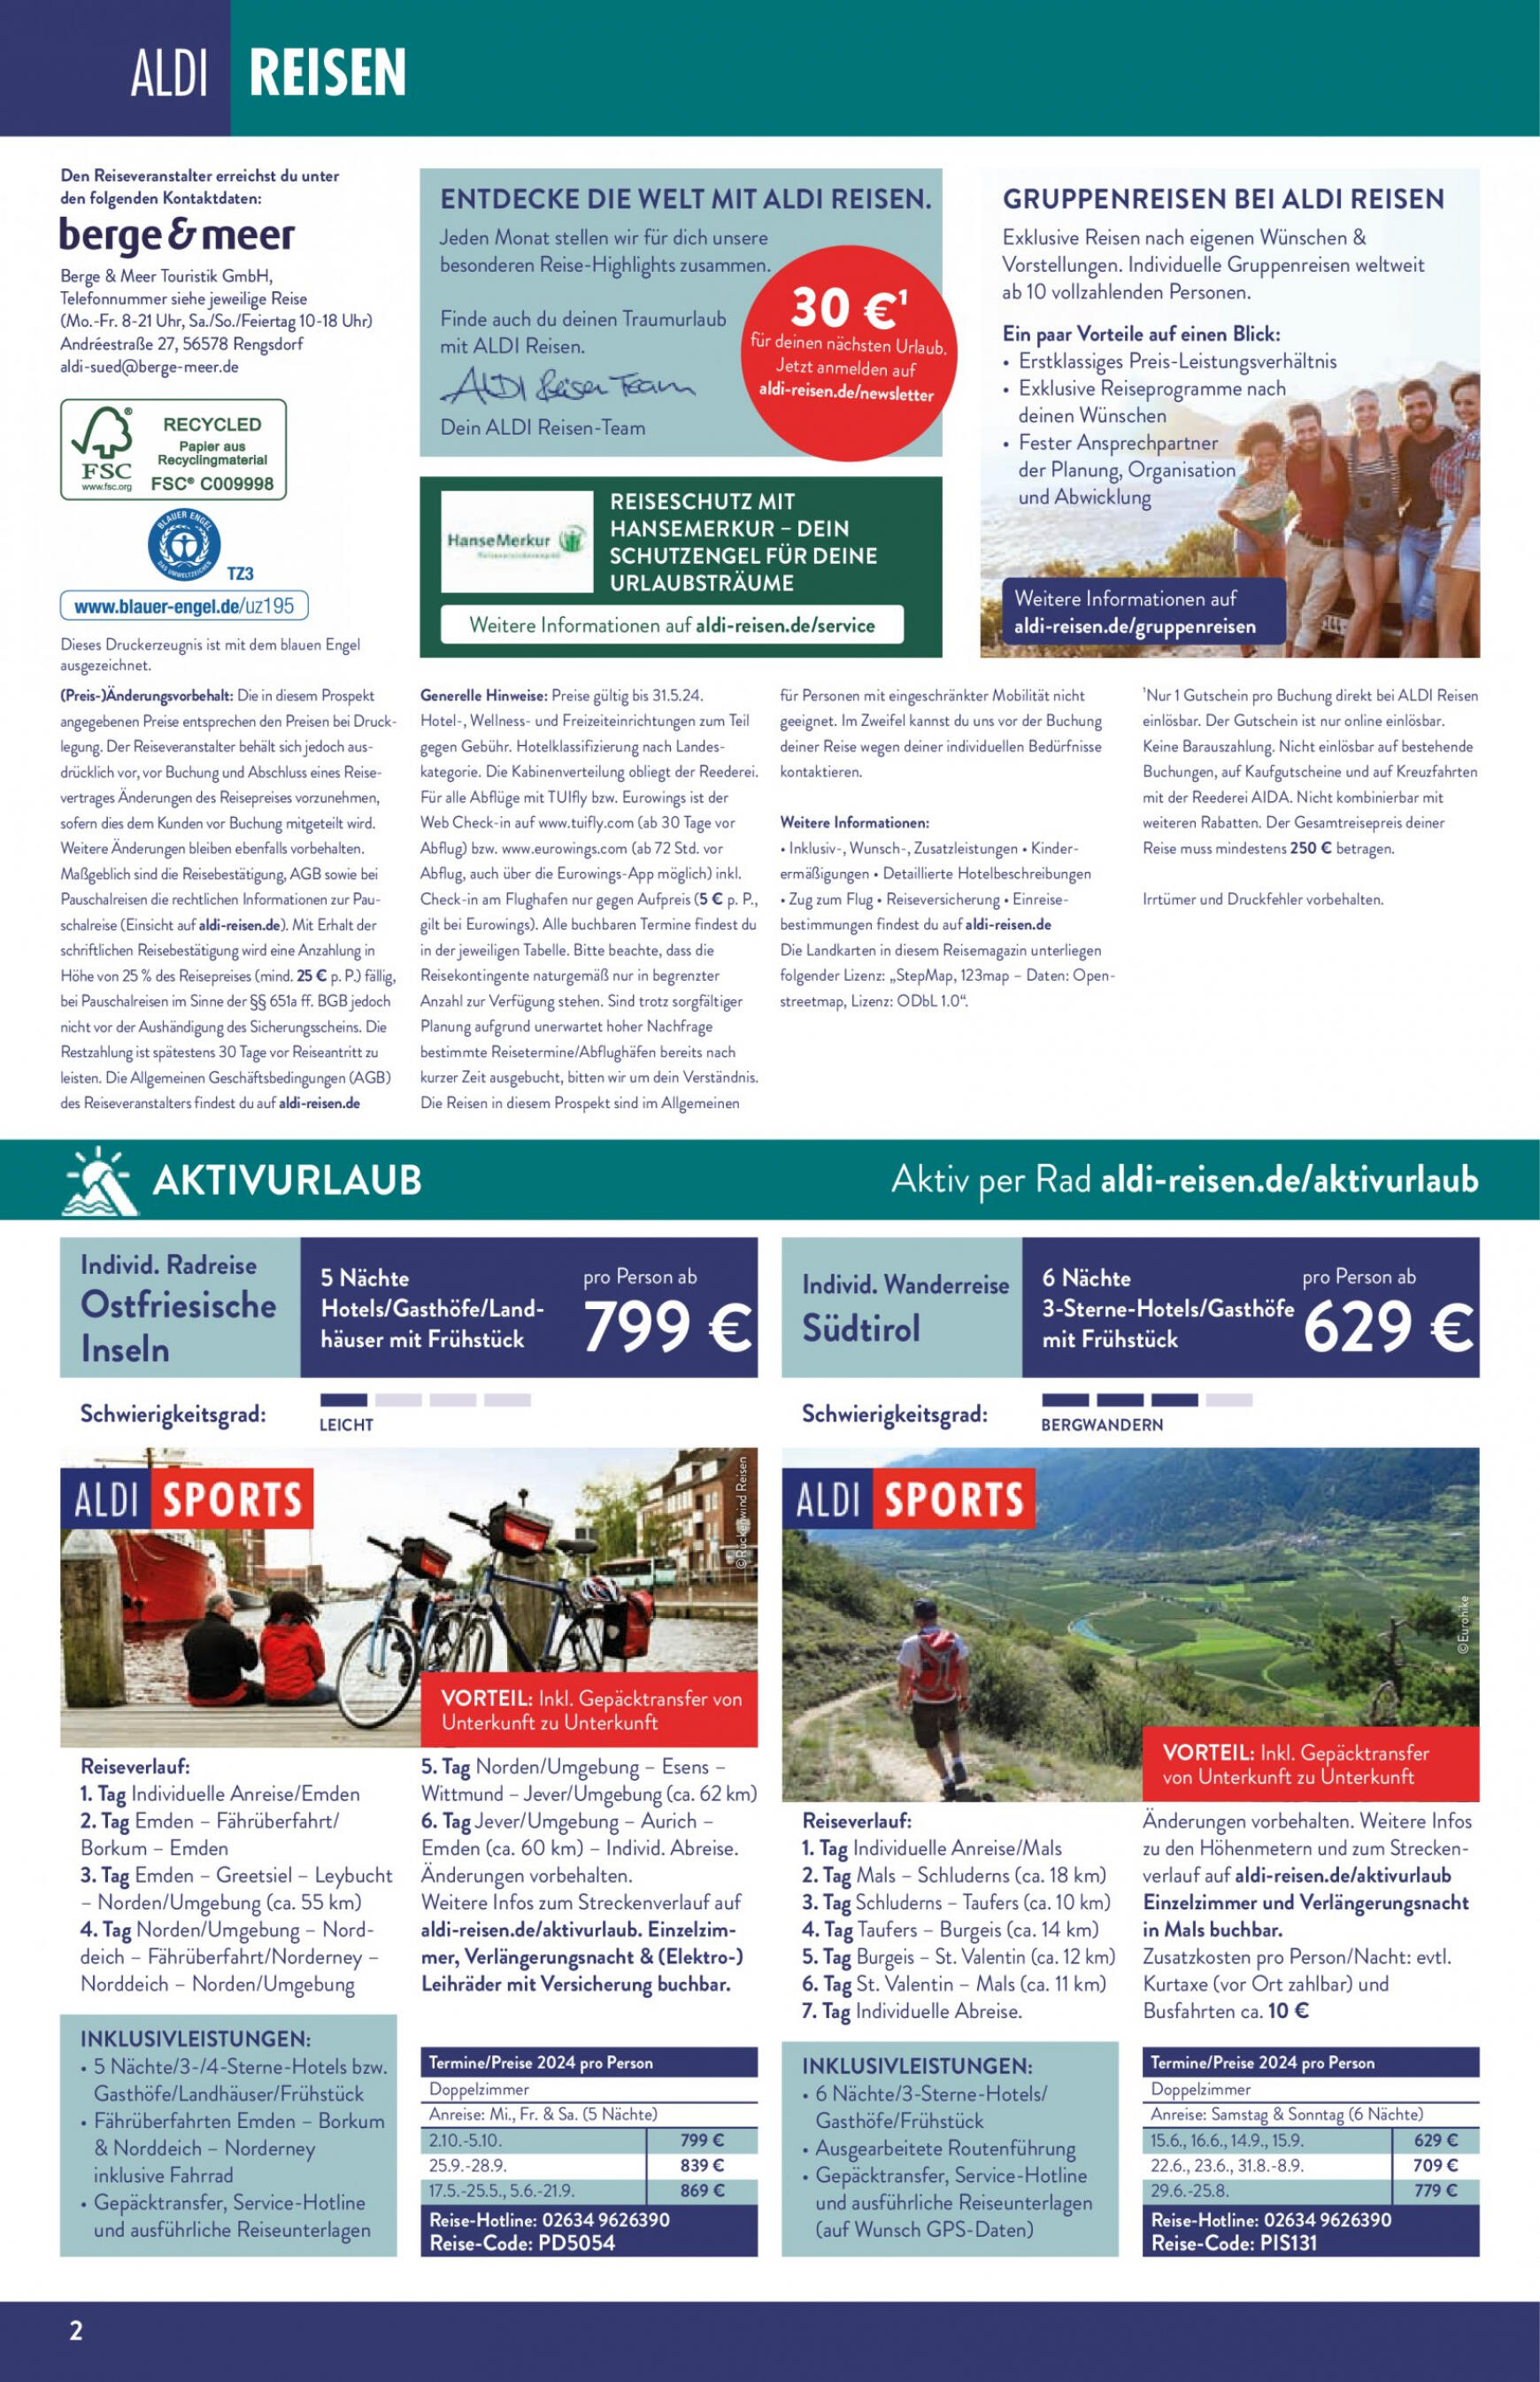 aldi - Flyer ALDI SÜD - Reisemagazin aktuell 02.05. - 31.05. - page: 2